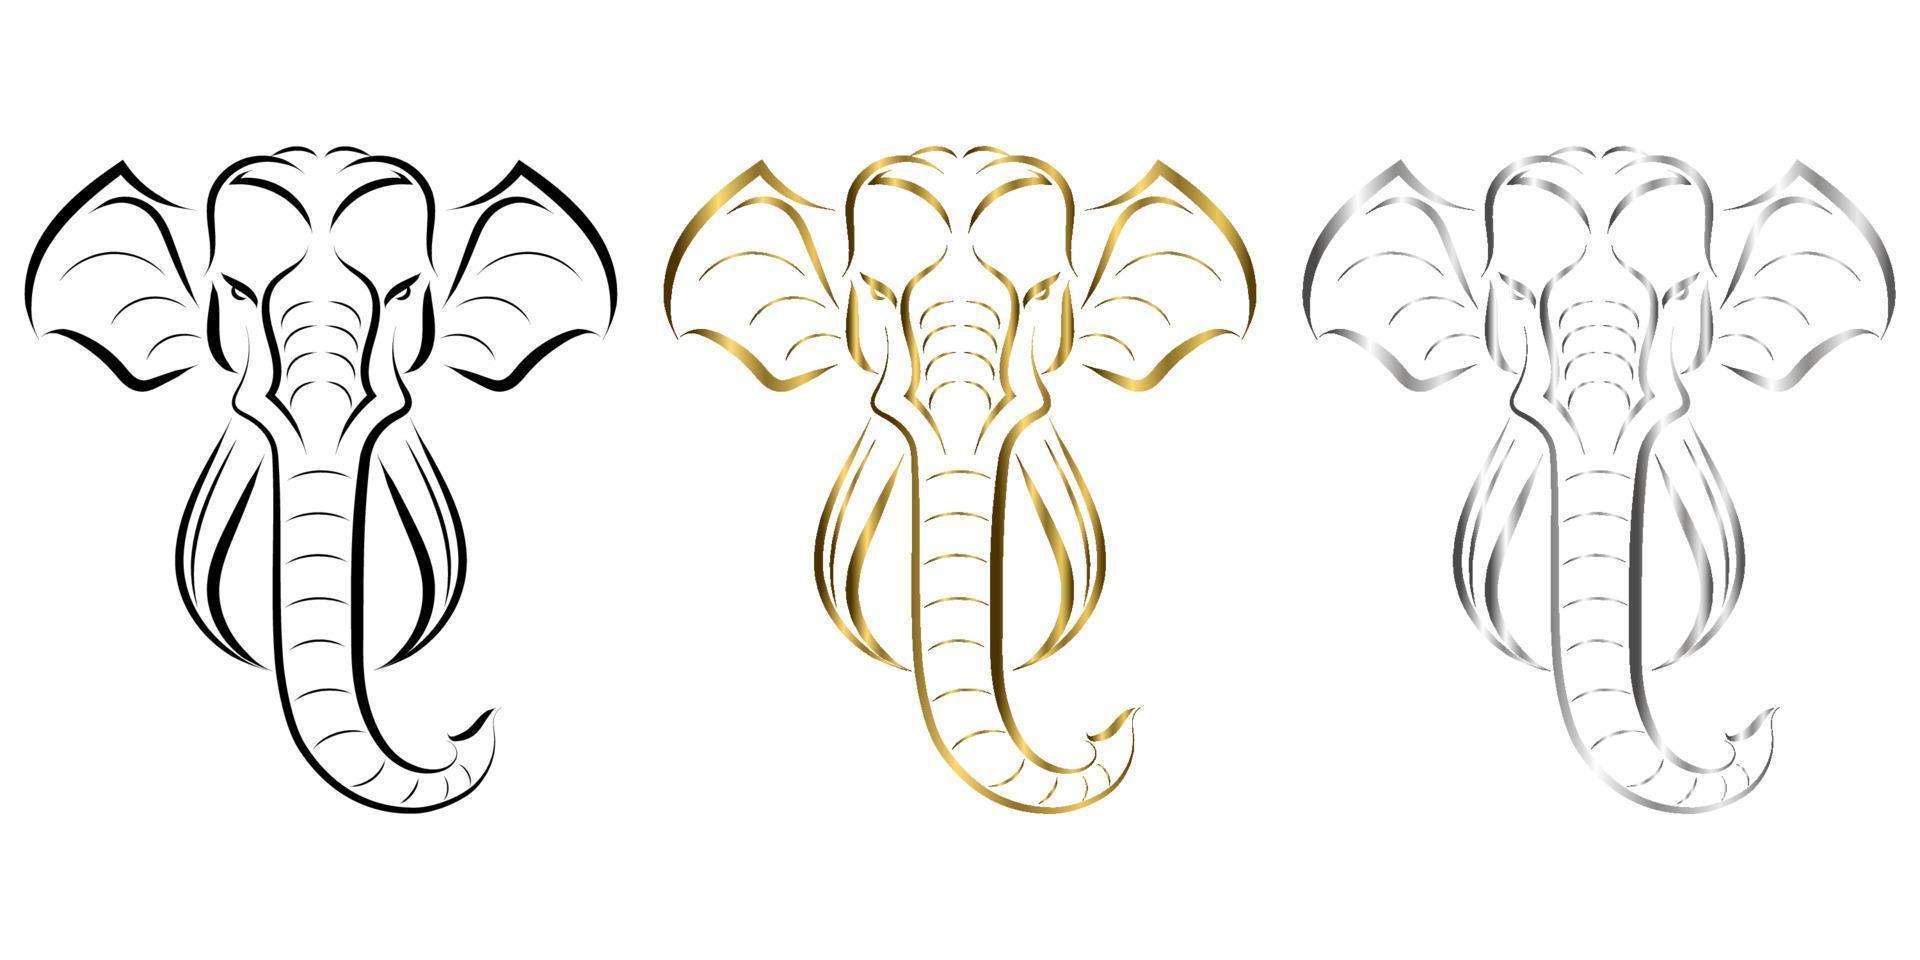 line art della parte anteriore della testa dell'elefante. buon uso per simbolo, mascotte, icona, avatar, tatuaggio, design di t-shirt, logo o qualsiasi disegno tu voglia. vettore